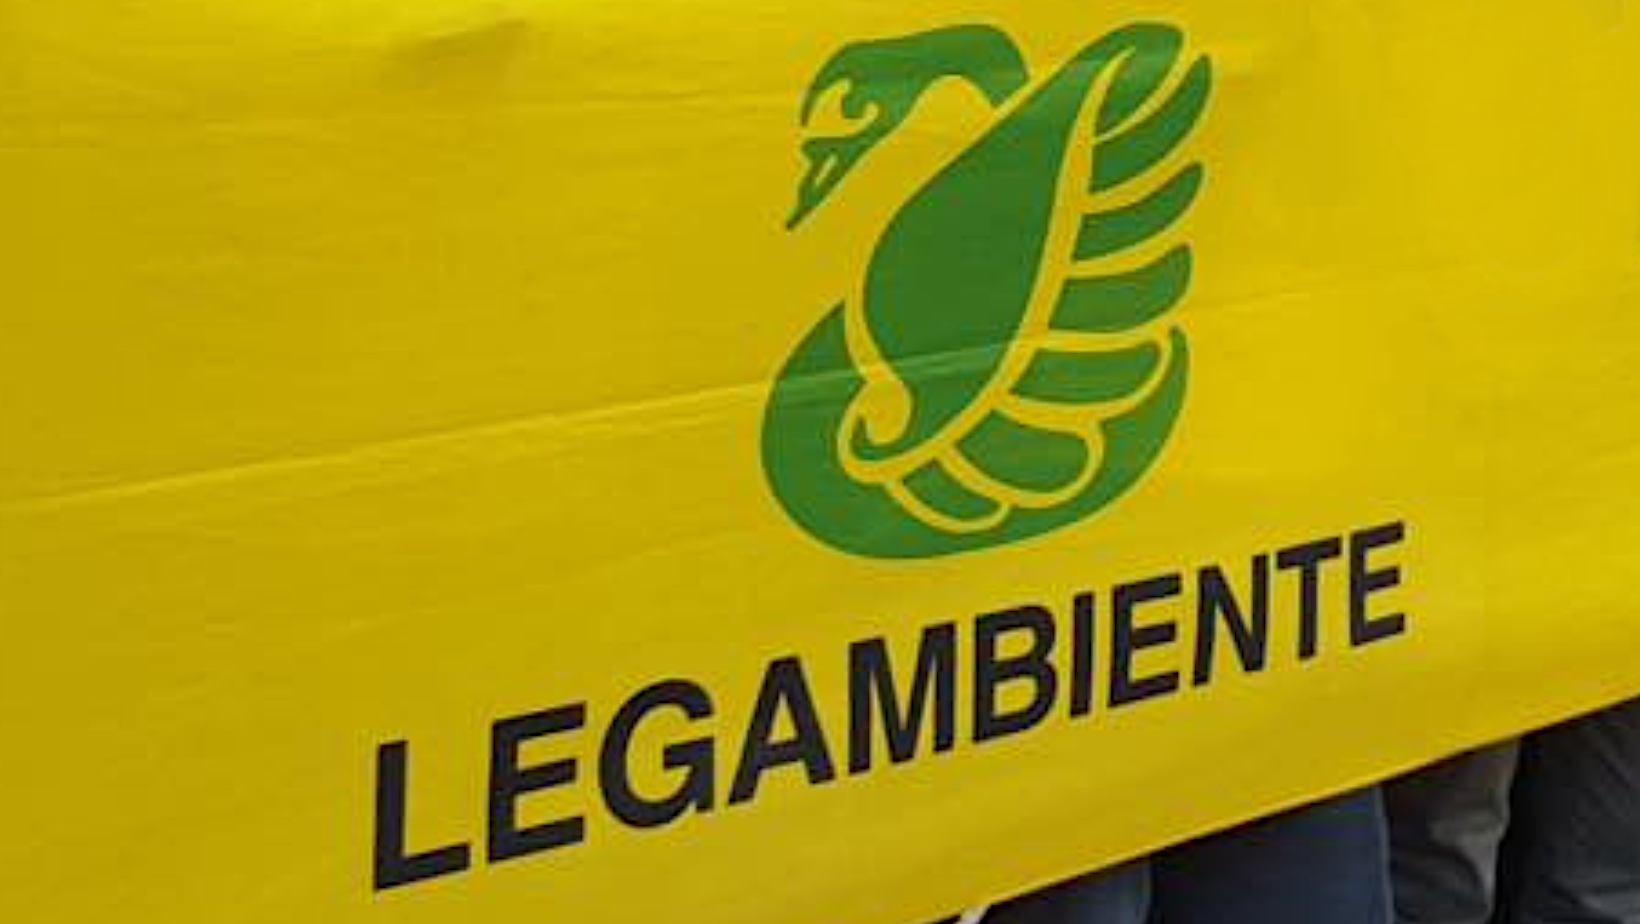 Stop diesel euro 5, Legambiente: “Transizione ecologica equa, agire subito anche in Lombardia”